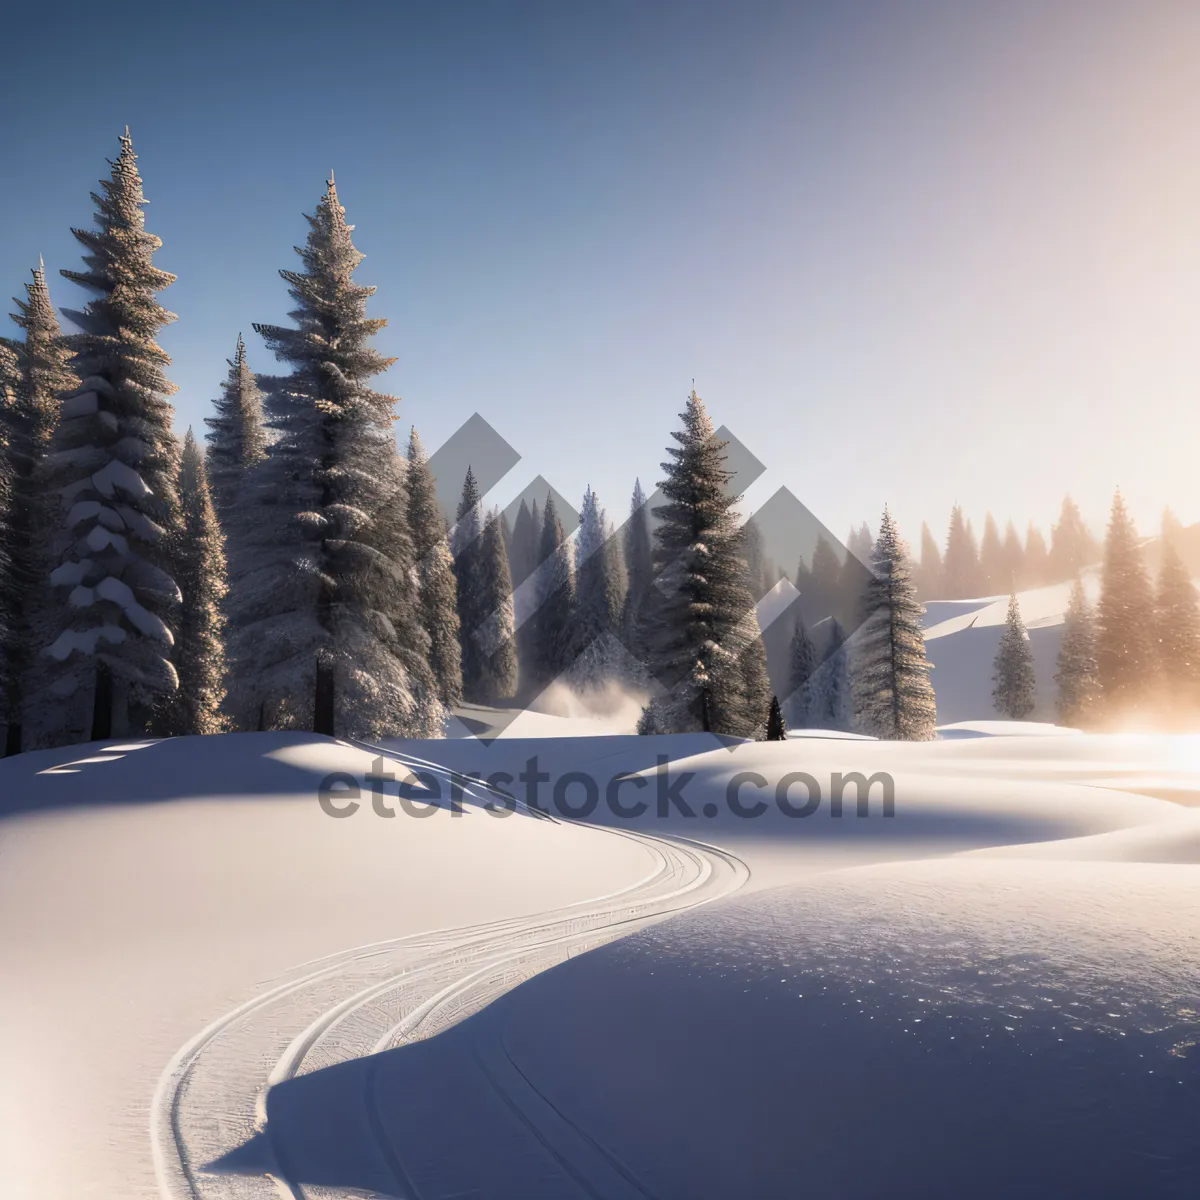 Picture of Majestic Alpine Beauty: Snowy Mountain Landscape in Winter